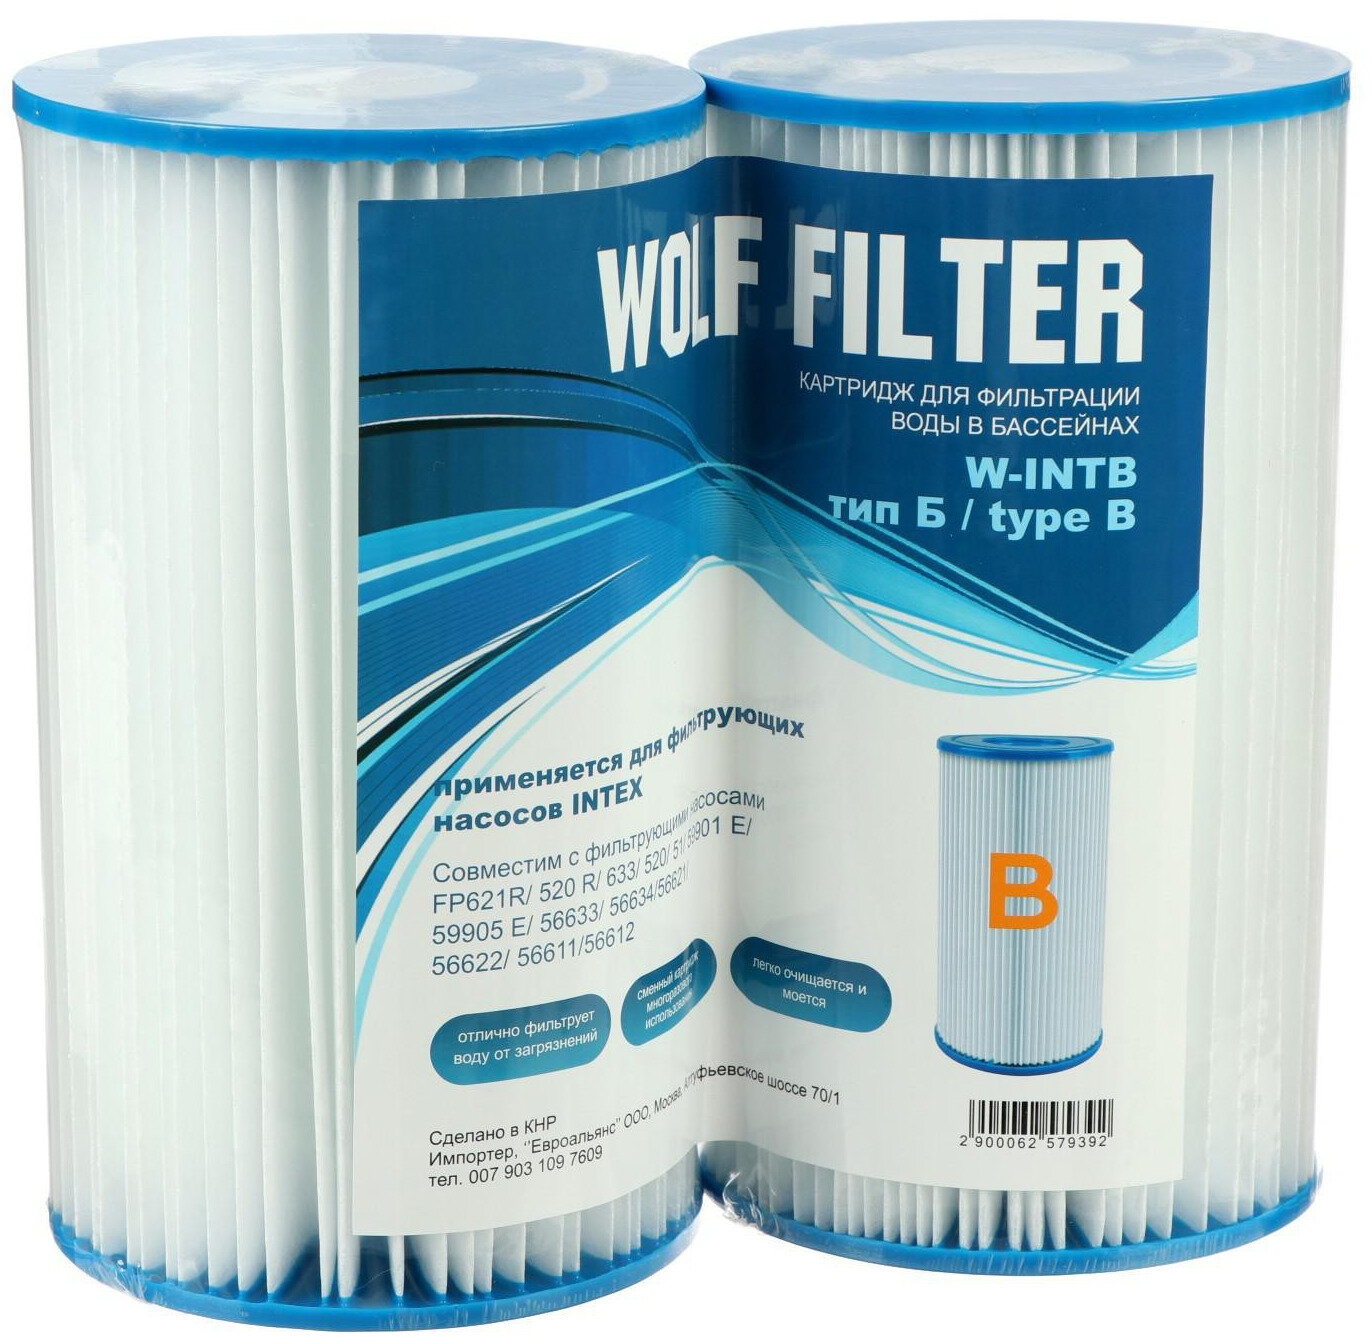 Картридж для очистки воды в бассейнах INTEX для фильтрующих насосов тип В набор из 2 сменных фильтр-картриджей многоразового использования для надувных и каркасных бассейнов